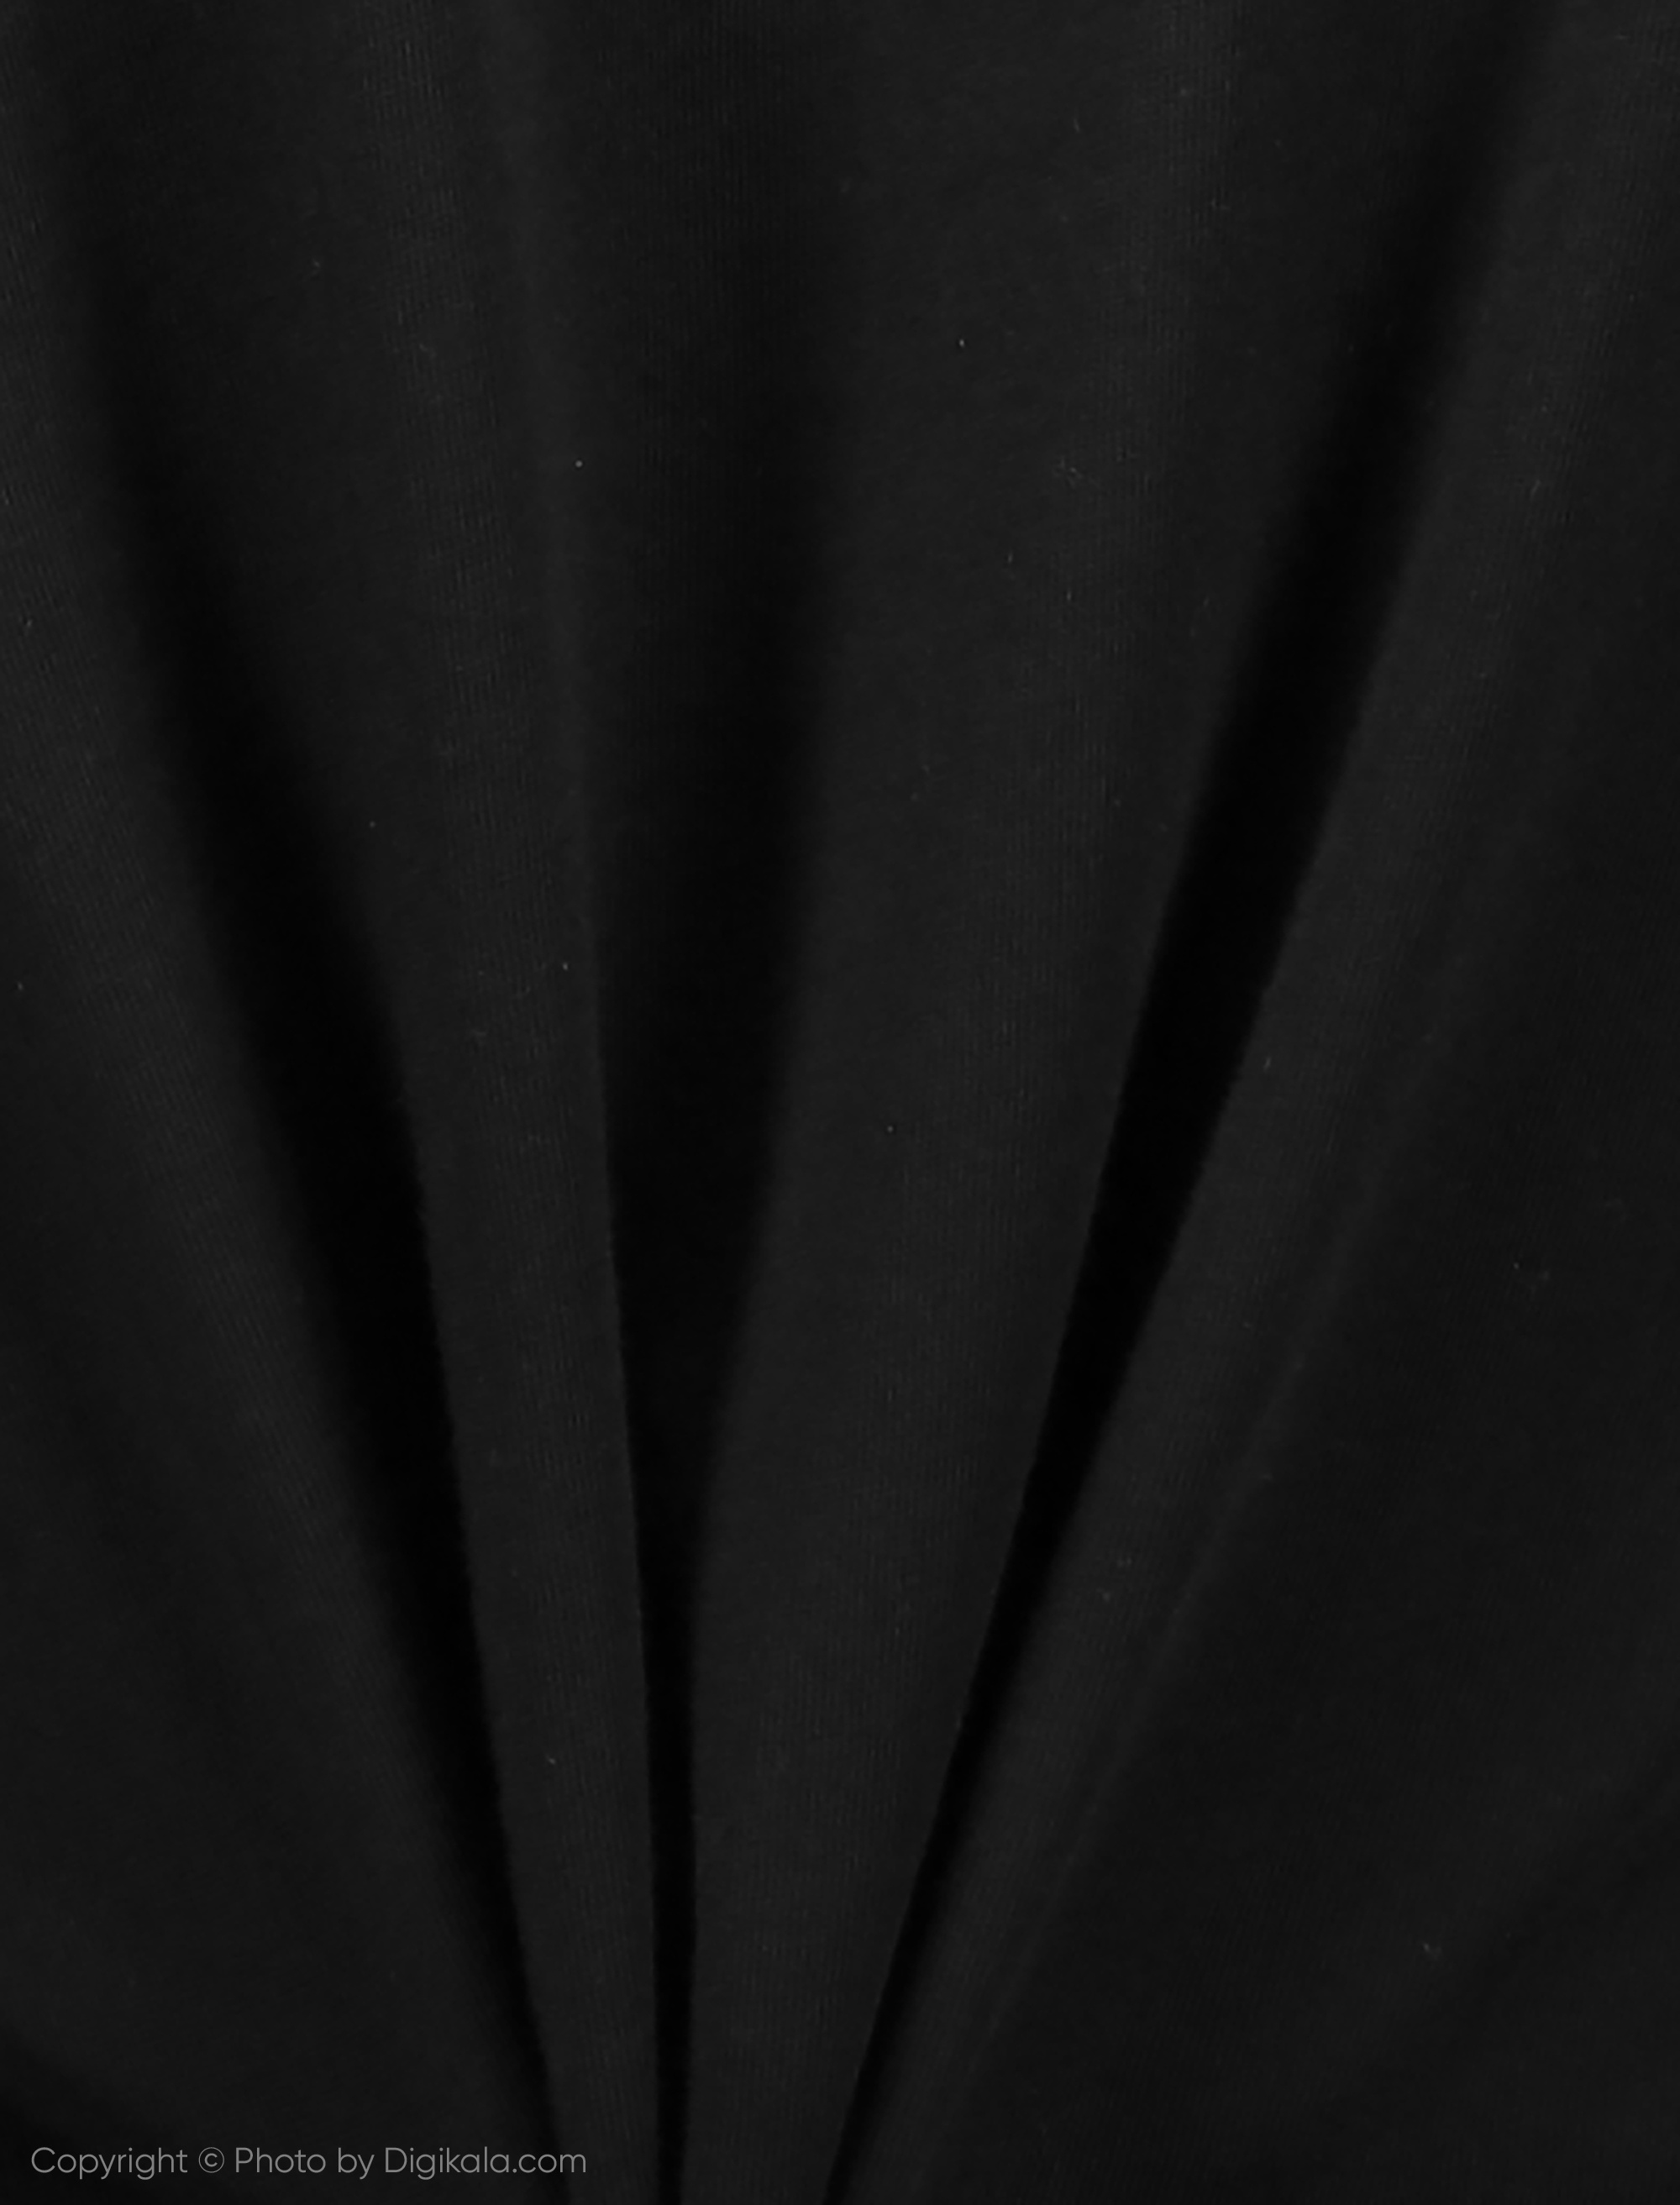 تی شرت زنانه کالینز مدل CL1019324-BLACK